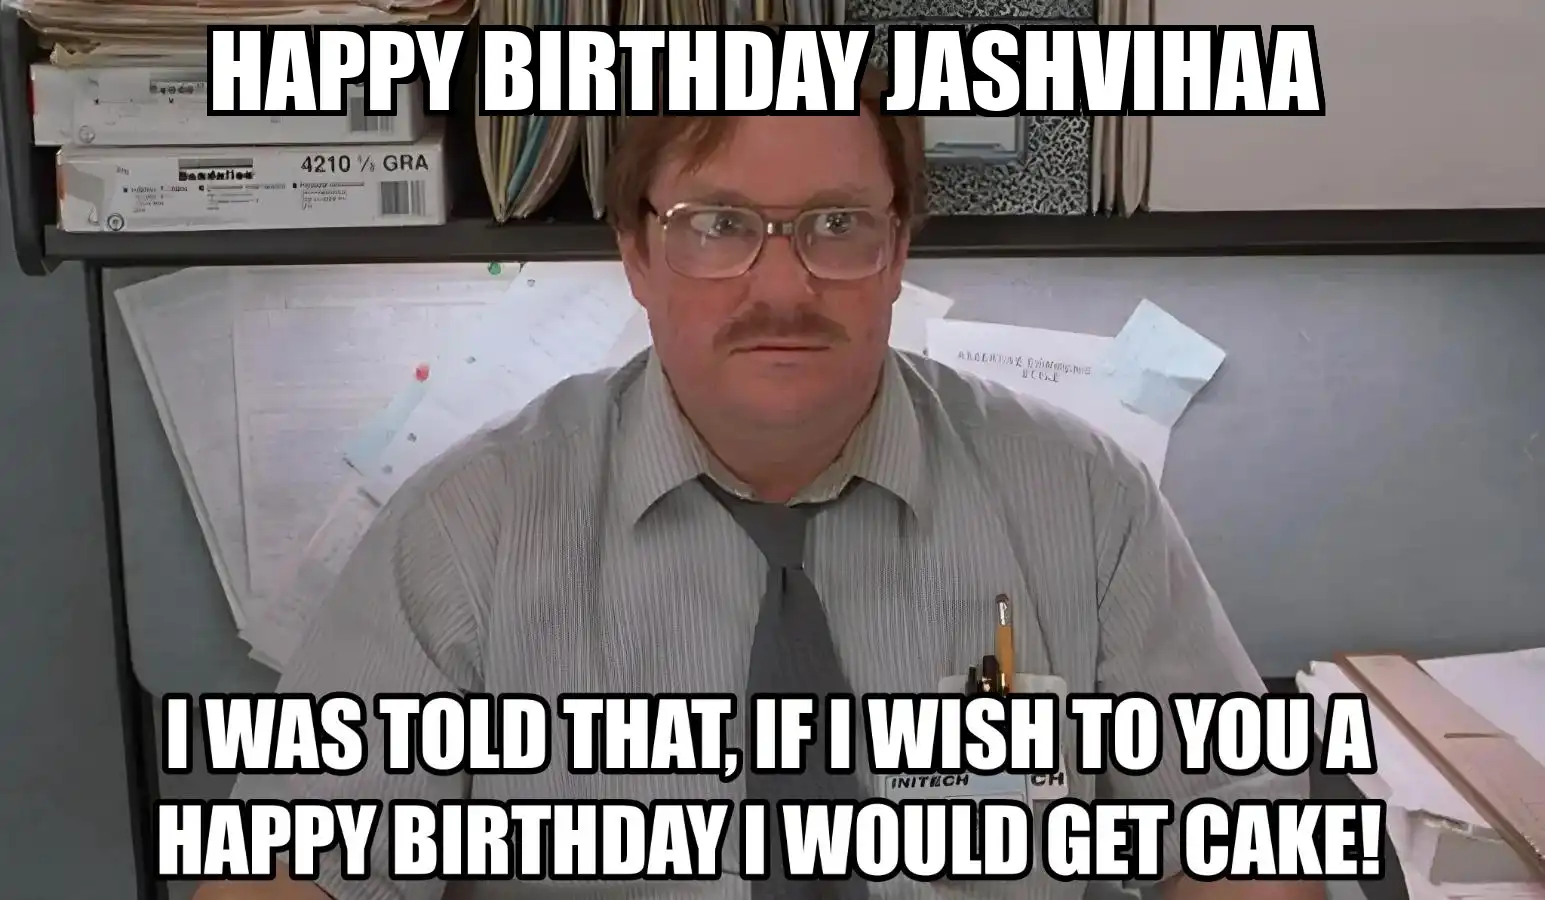 Happy Birthday Jashvihaa I Would Get A Cake Meme